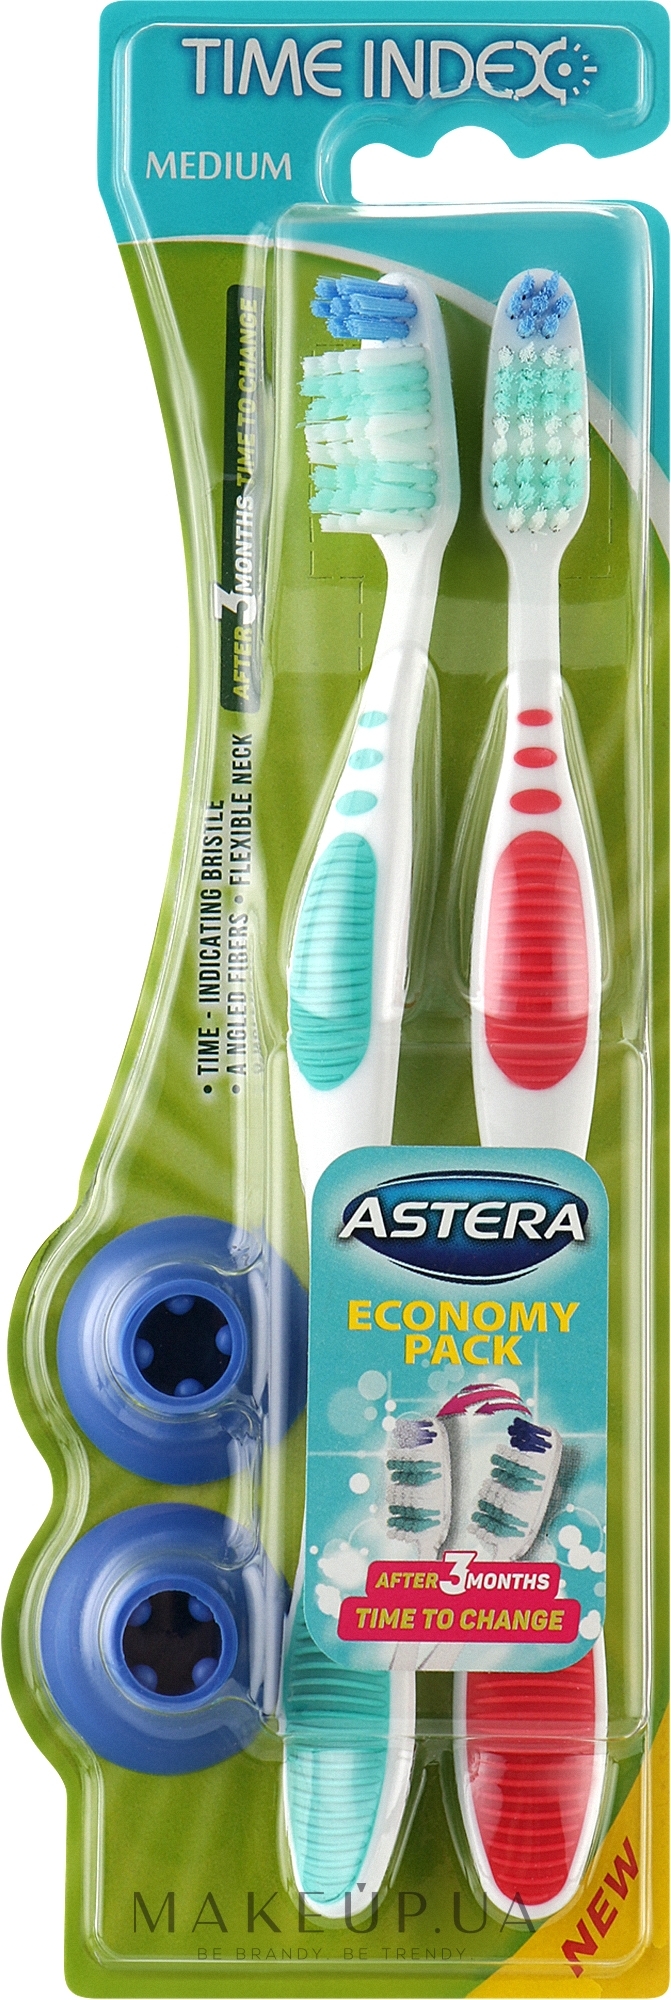 Зубная щетка c индикатором времени, красная + бирюзовая - Astera Time Index Toothbrush 1 + 1 — фото 2шт